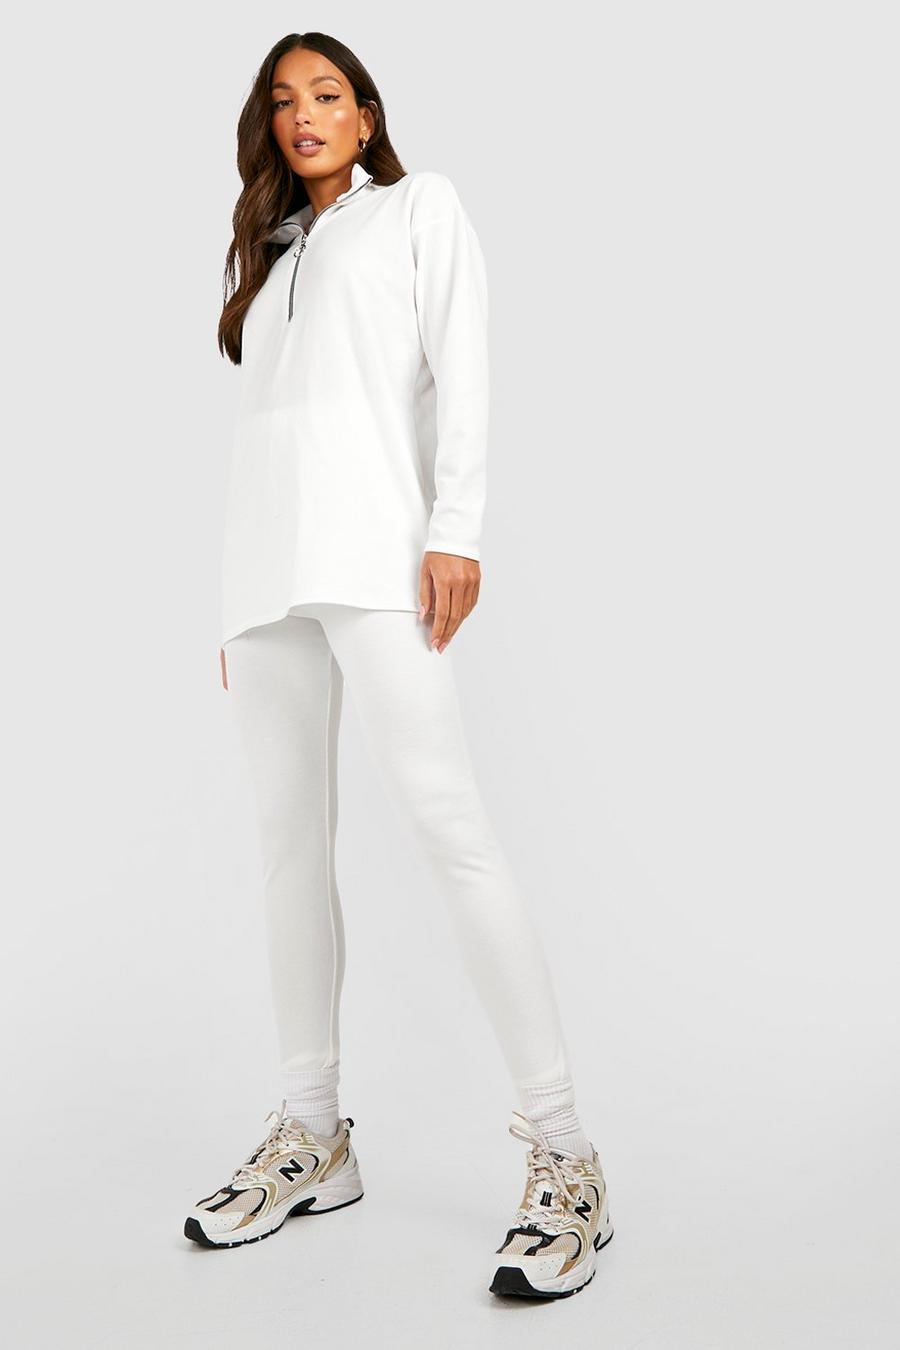 Tall - Survêtement côtelé avec sweat et legging, Ivory blanc